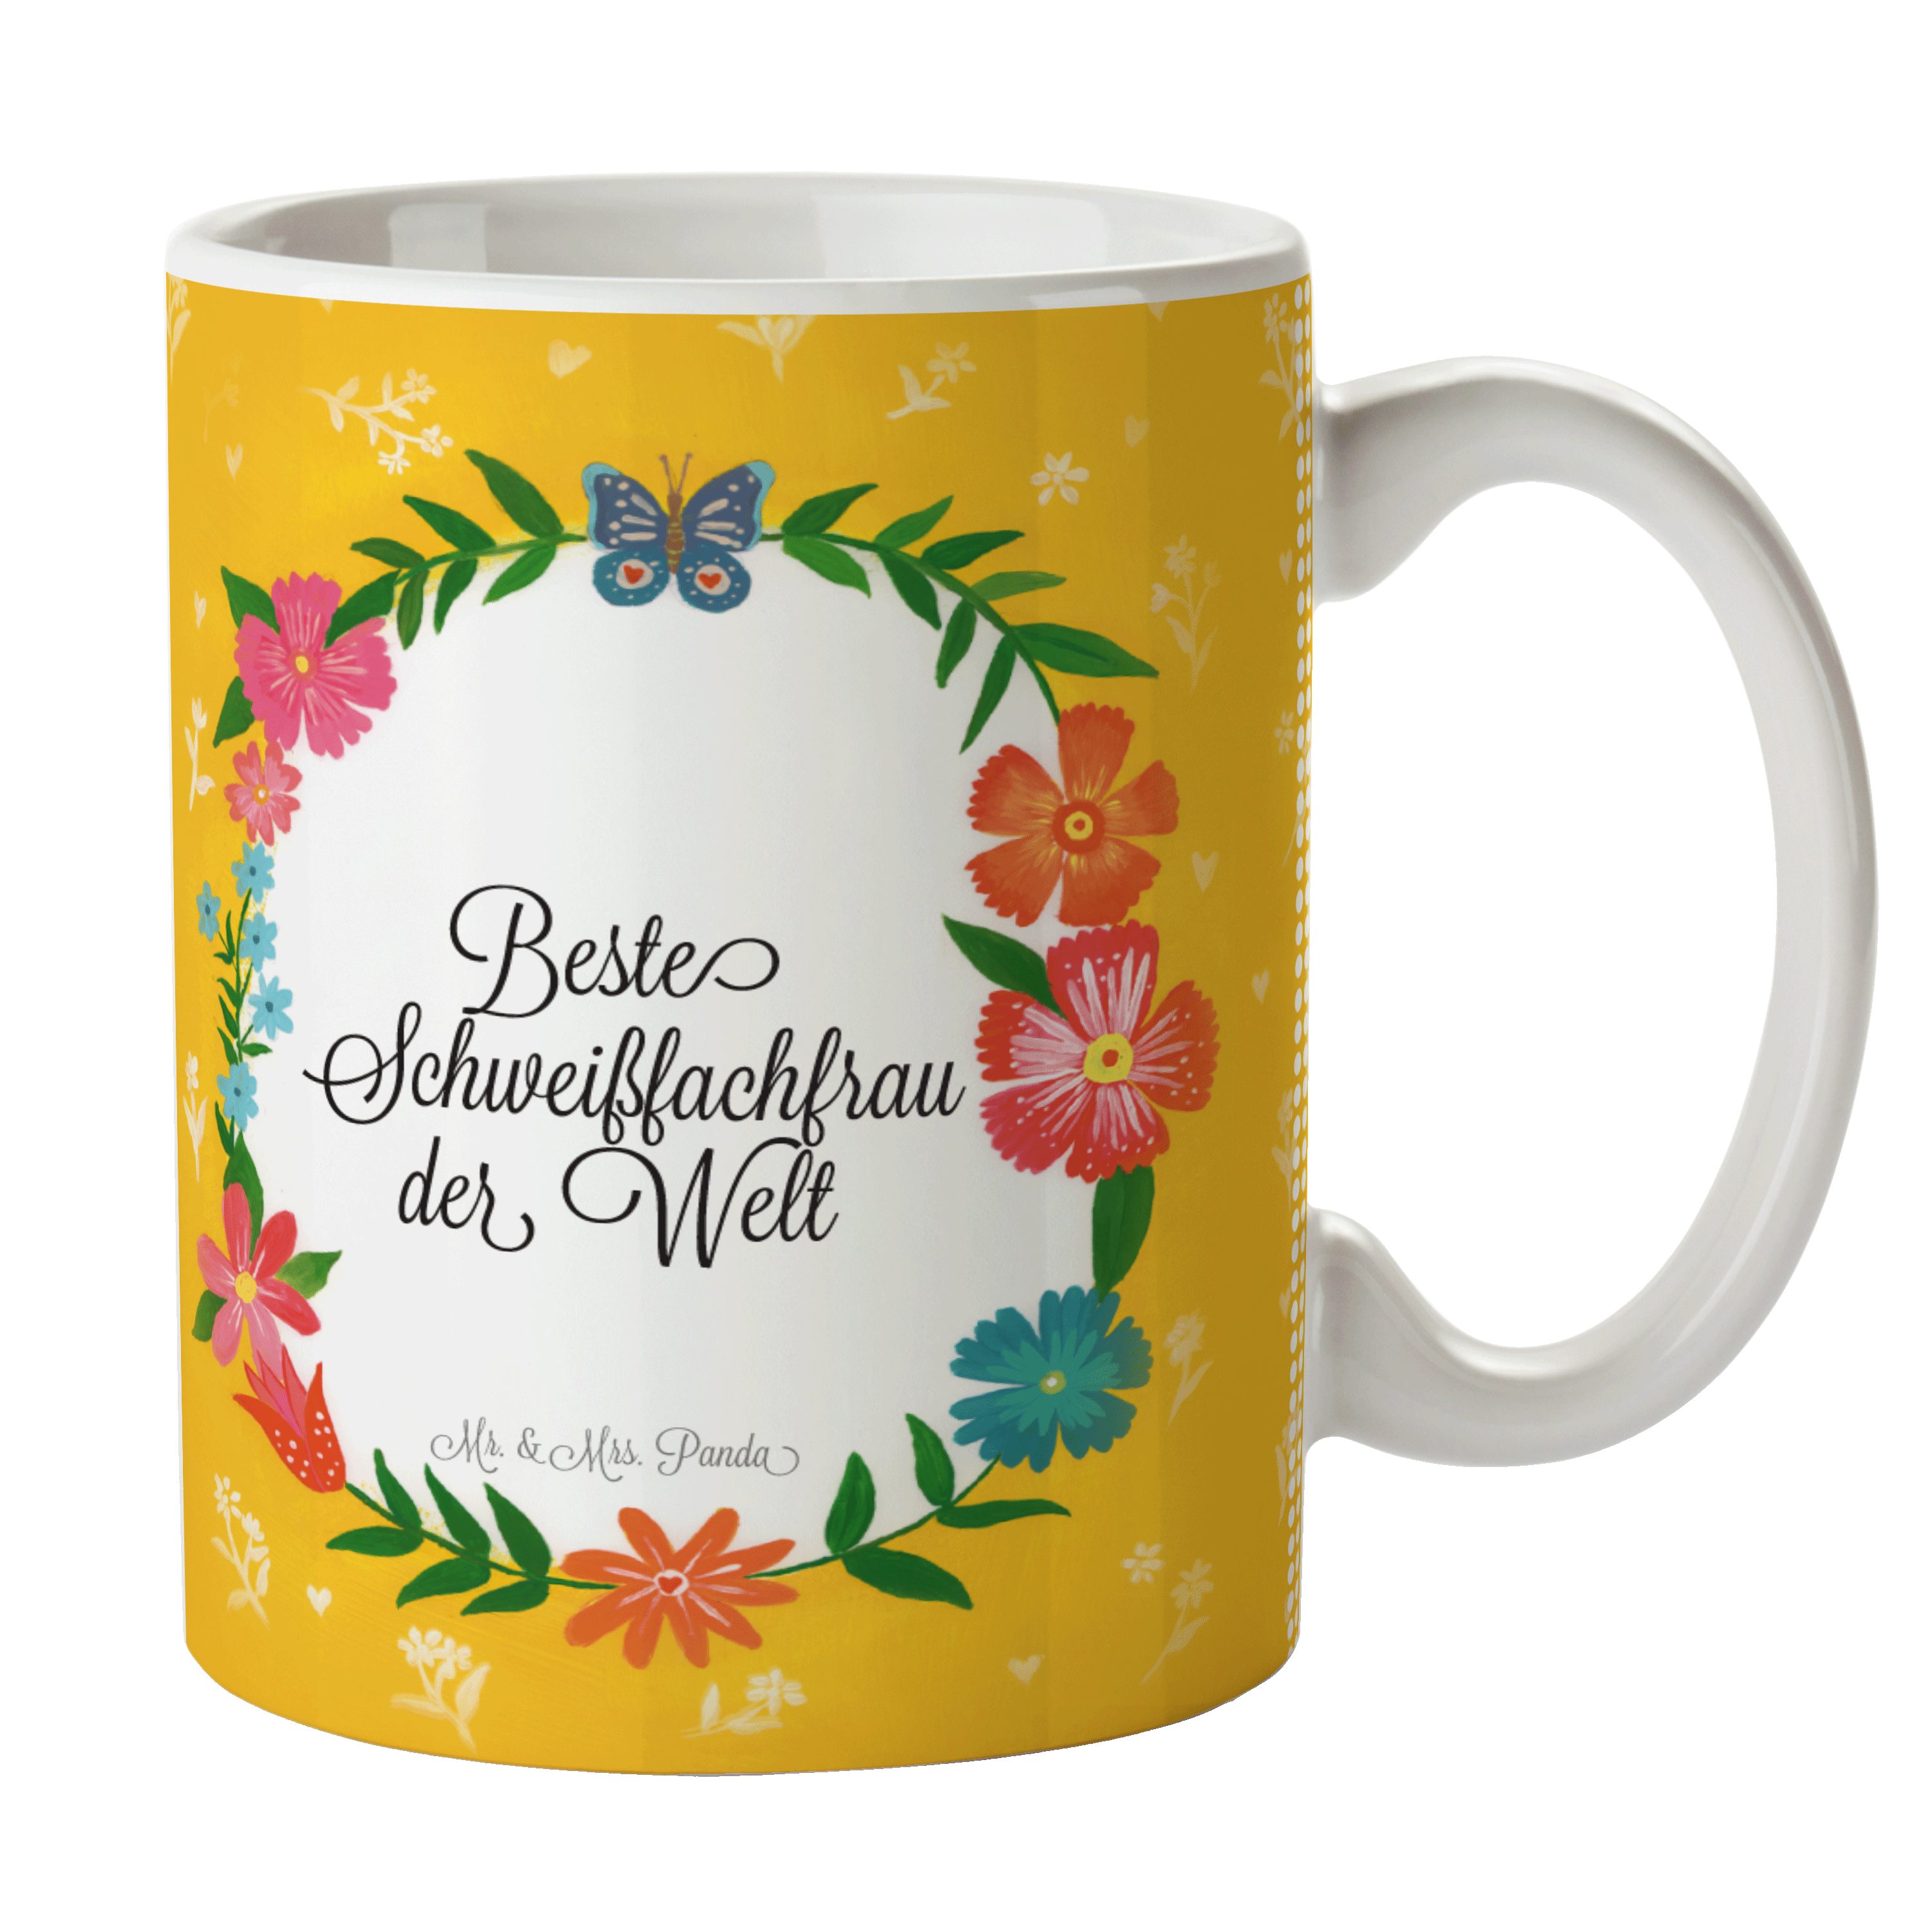 Mr. & Mrs. Panda Tasse Schweißfachfrau - Geschenk, Gratulation, Schenken, Ausbildung, Kaffee, Keramik